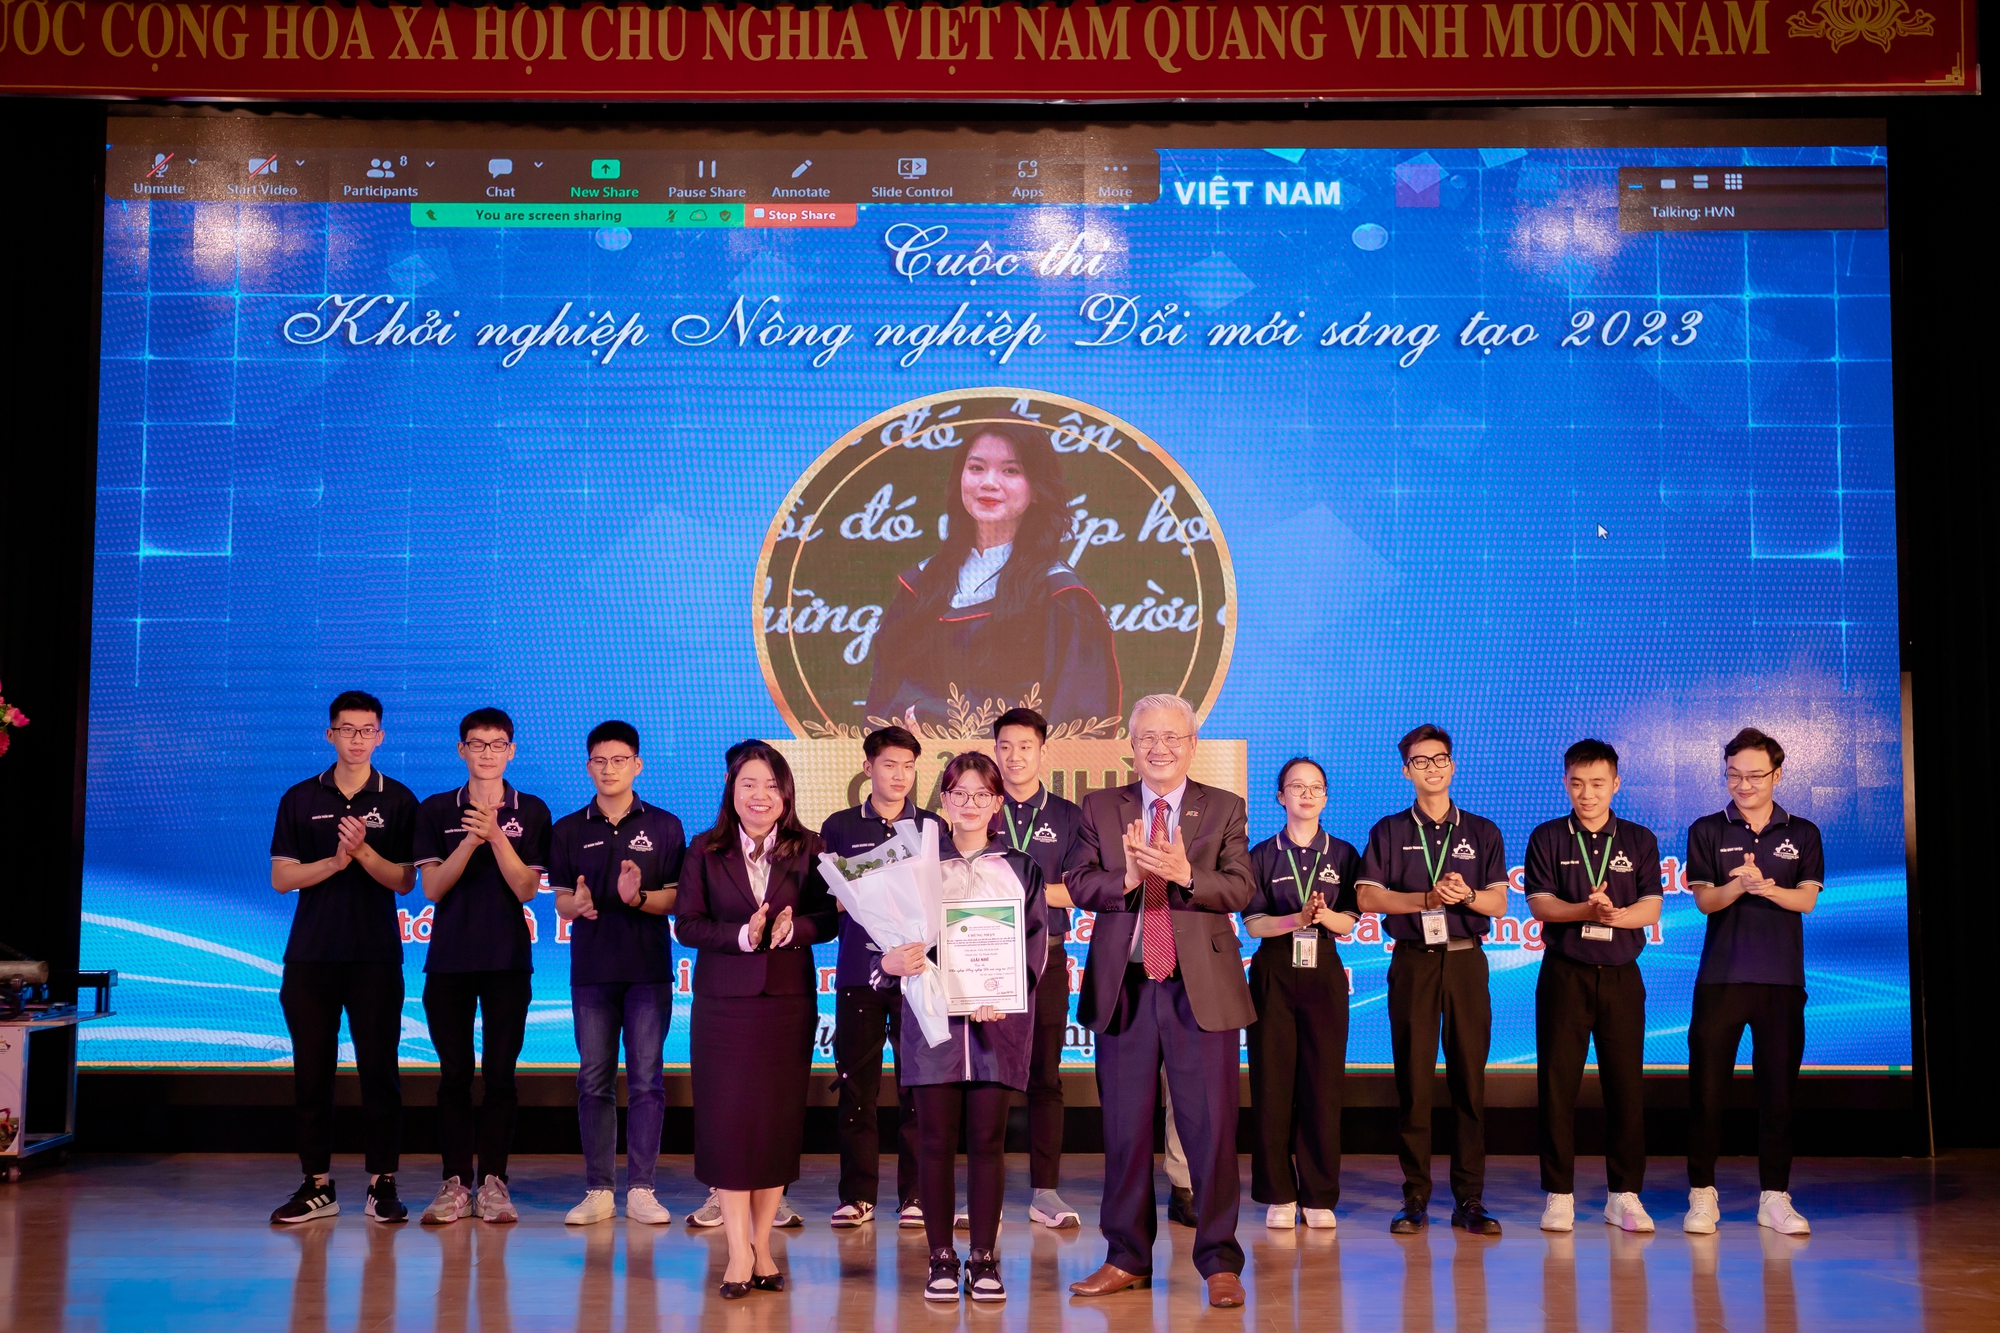 Chế tạo máy hàn tự động, sinh viên Học viện Nông nghiệp Việt Nam giành giải Nhất cuộc thi khởi nghiệp - Ảnh 2.